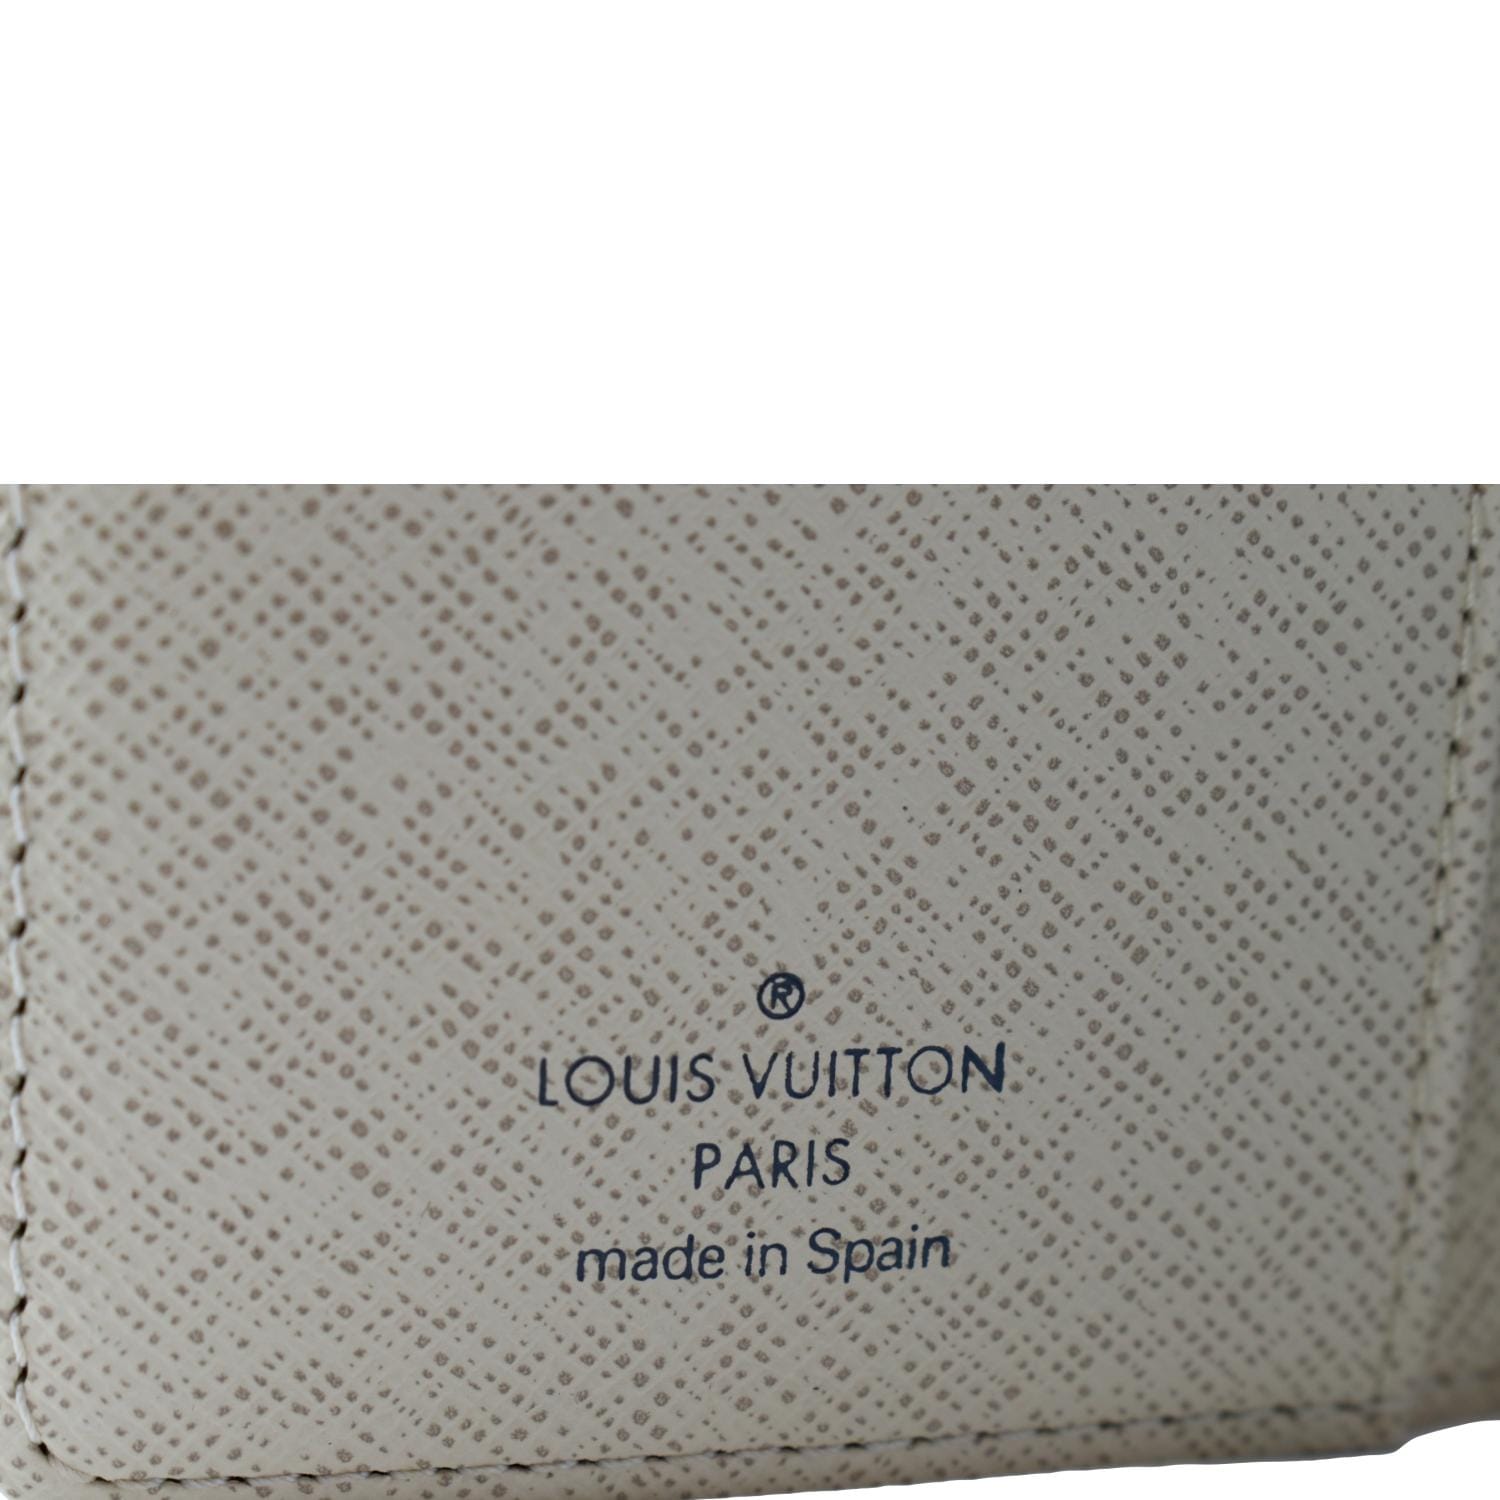 Louis Vuitton Agenda cover – The Brand Collector